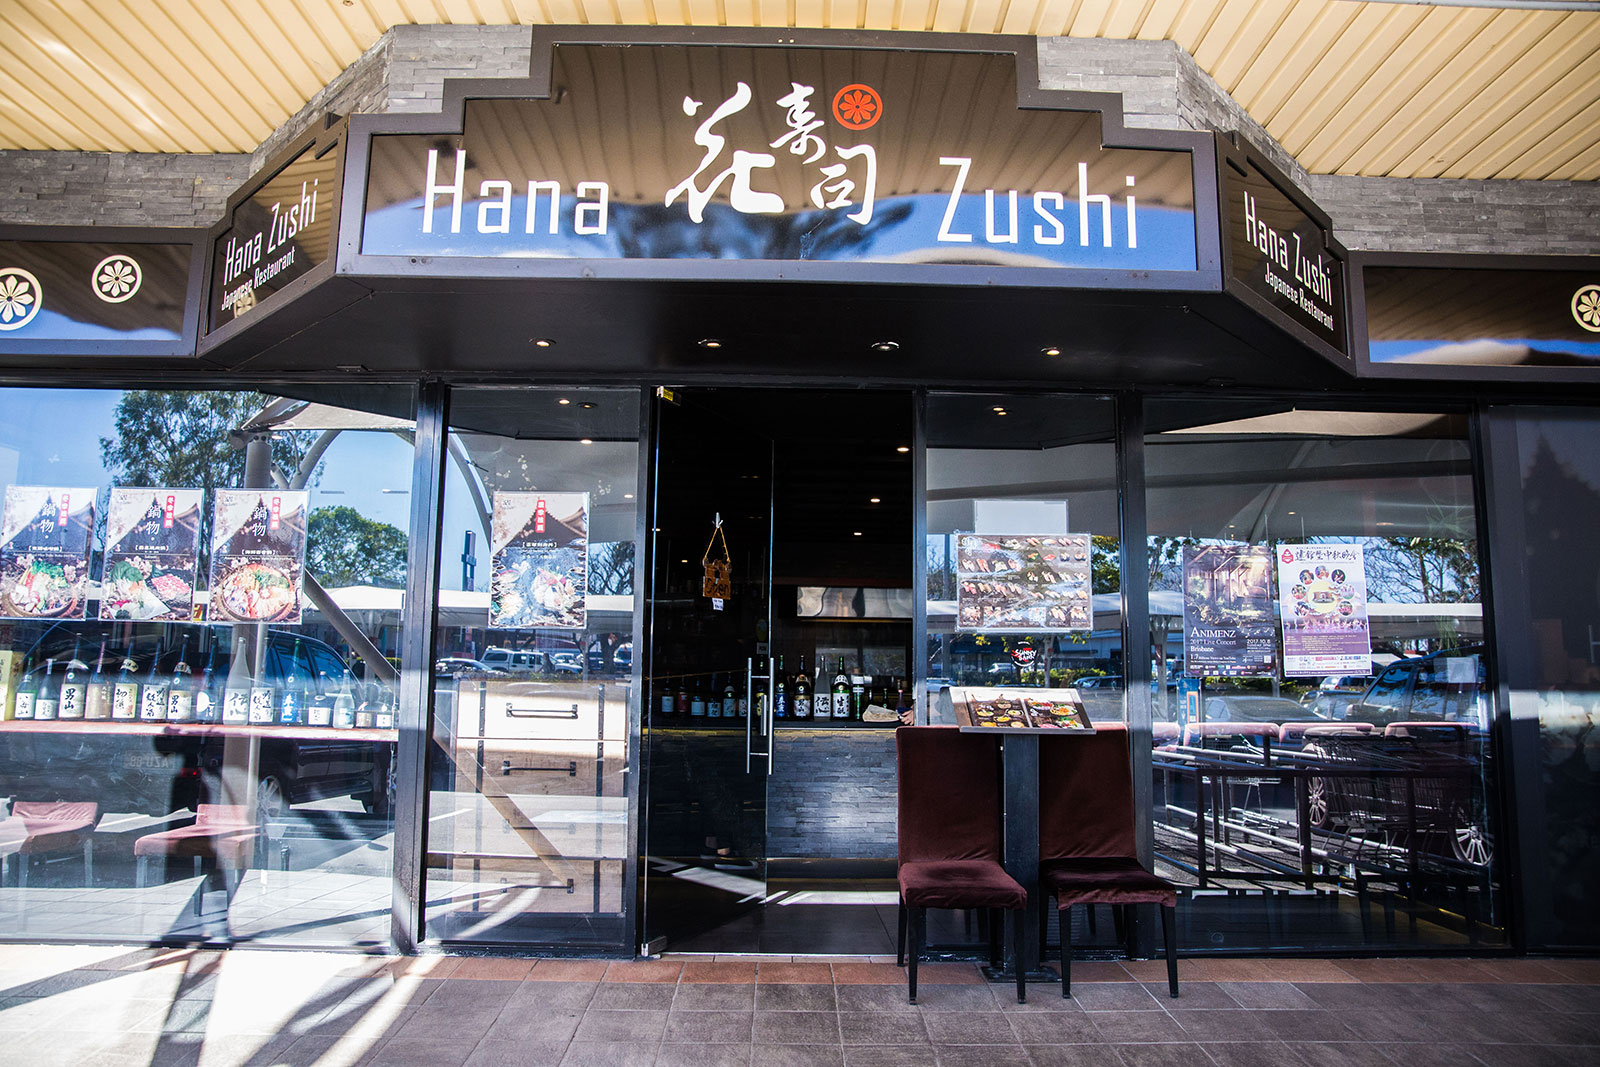 Shopfront hanazushi - Hana Zushi